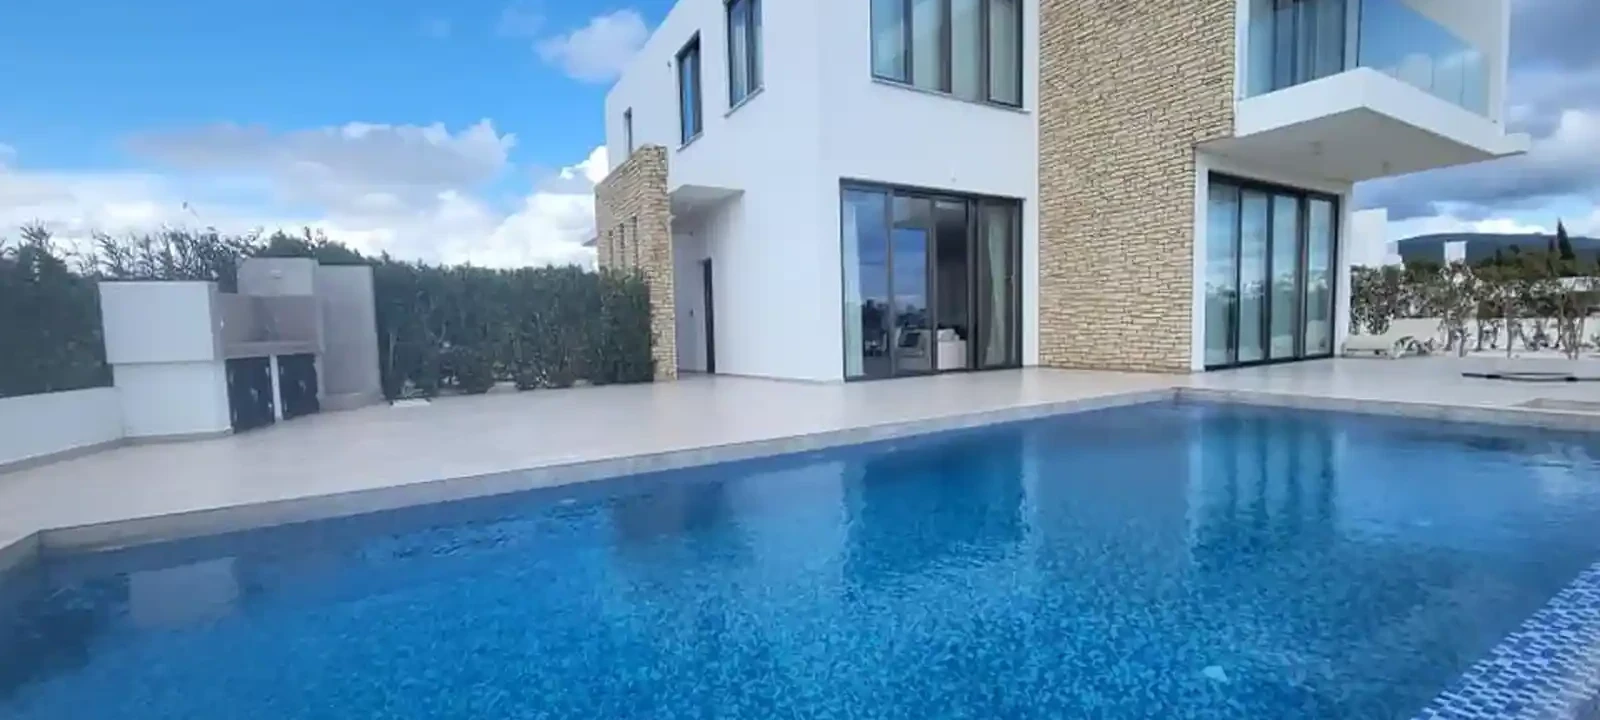 4-bedroom villa to rent €5.000, image 1